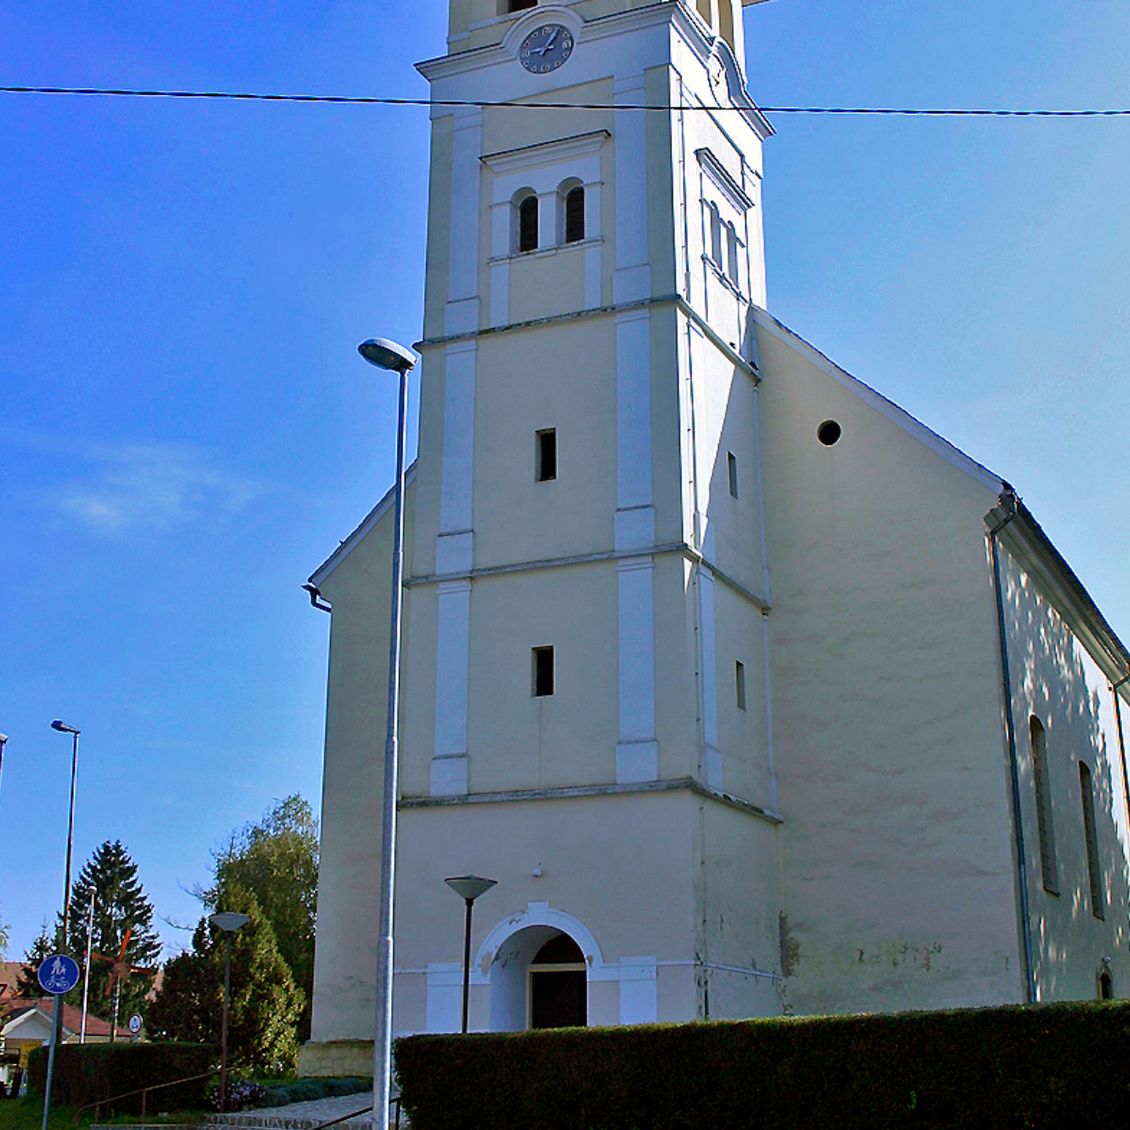 Cerkev sv Jakoba v Dobrovniku